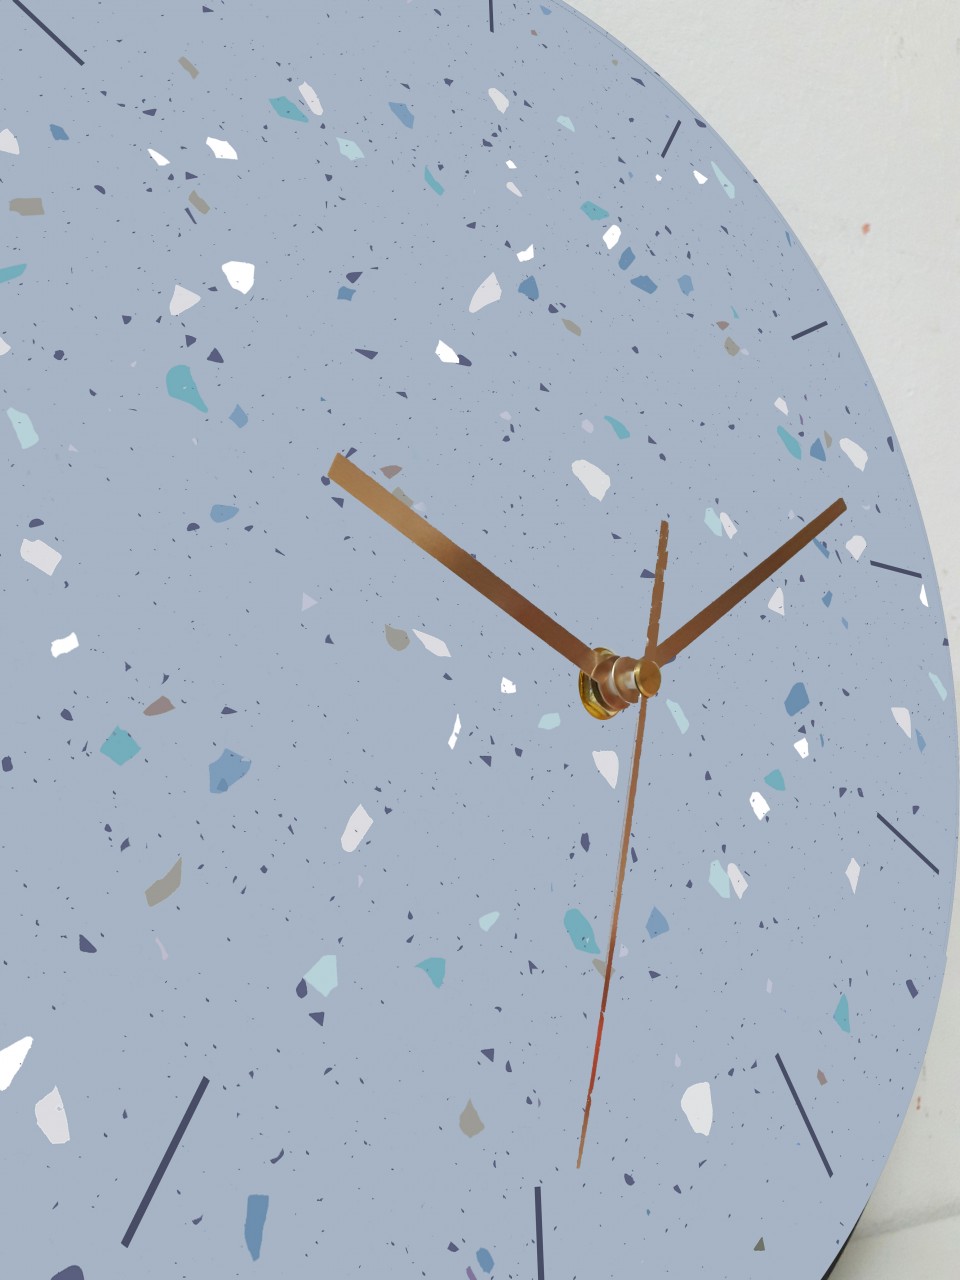 שעון עץ עגול בהדפס טראצו בגווני כחול מעושן